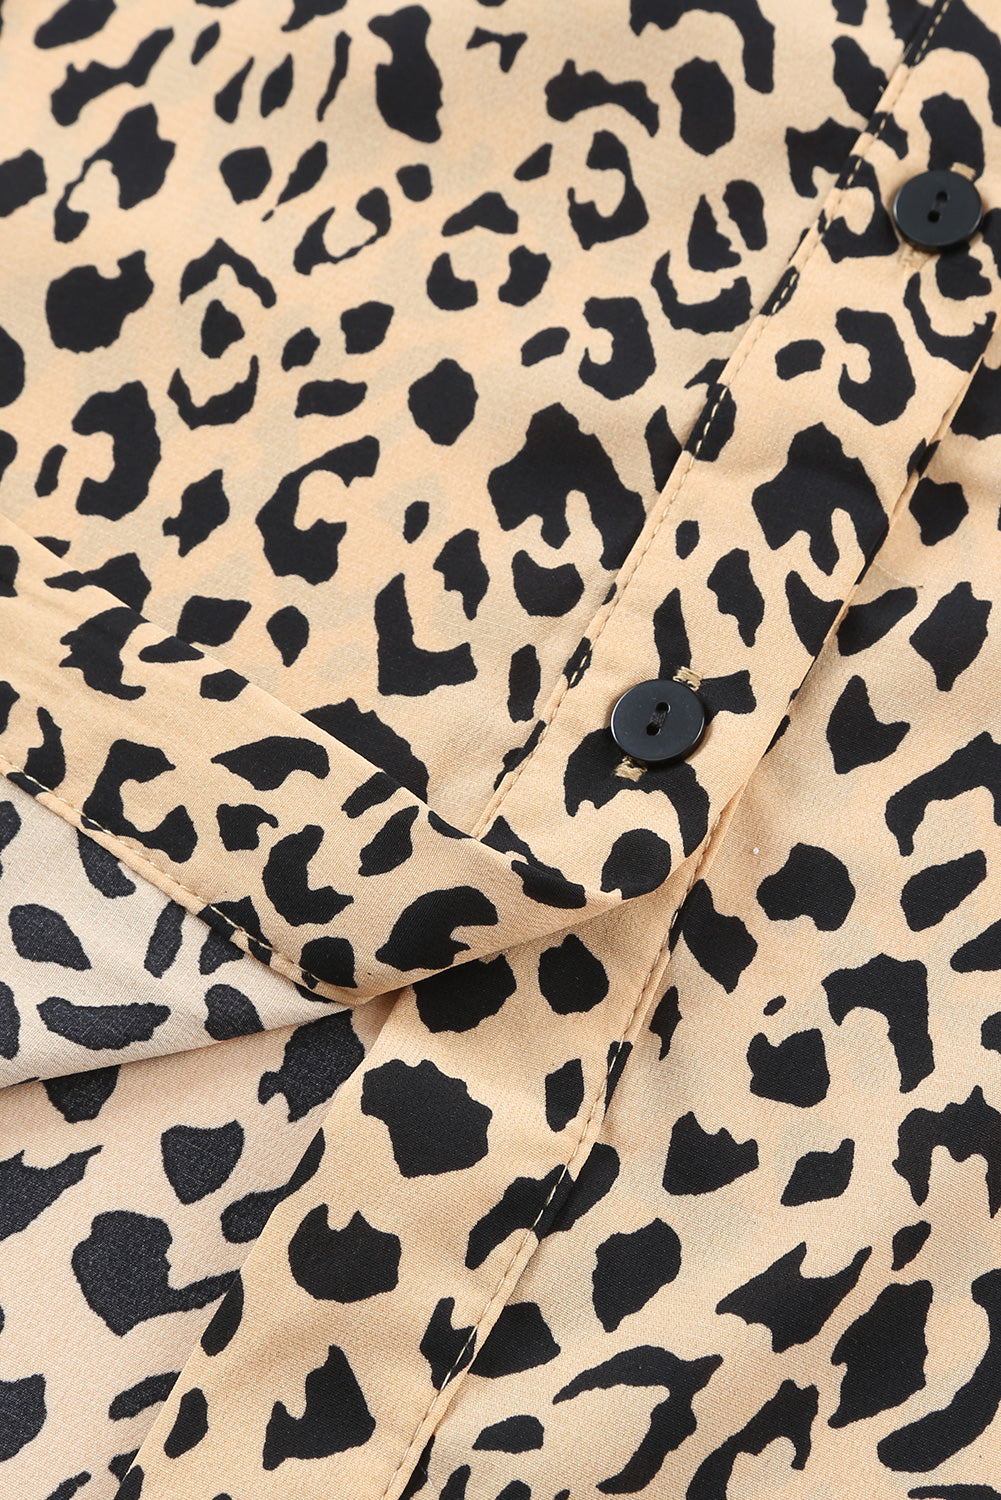 Kaki leopard midi haljina s ovratnikom i prorezom